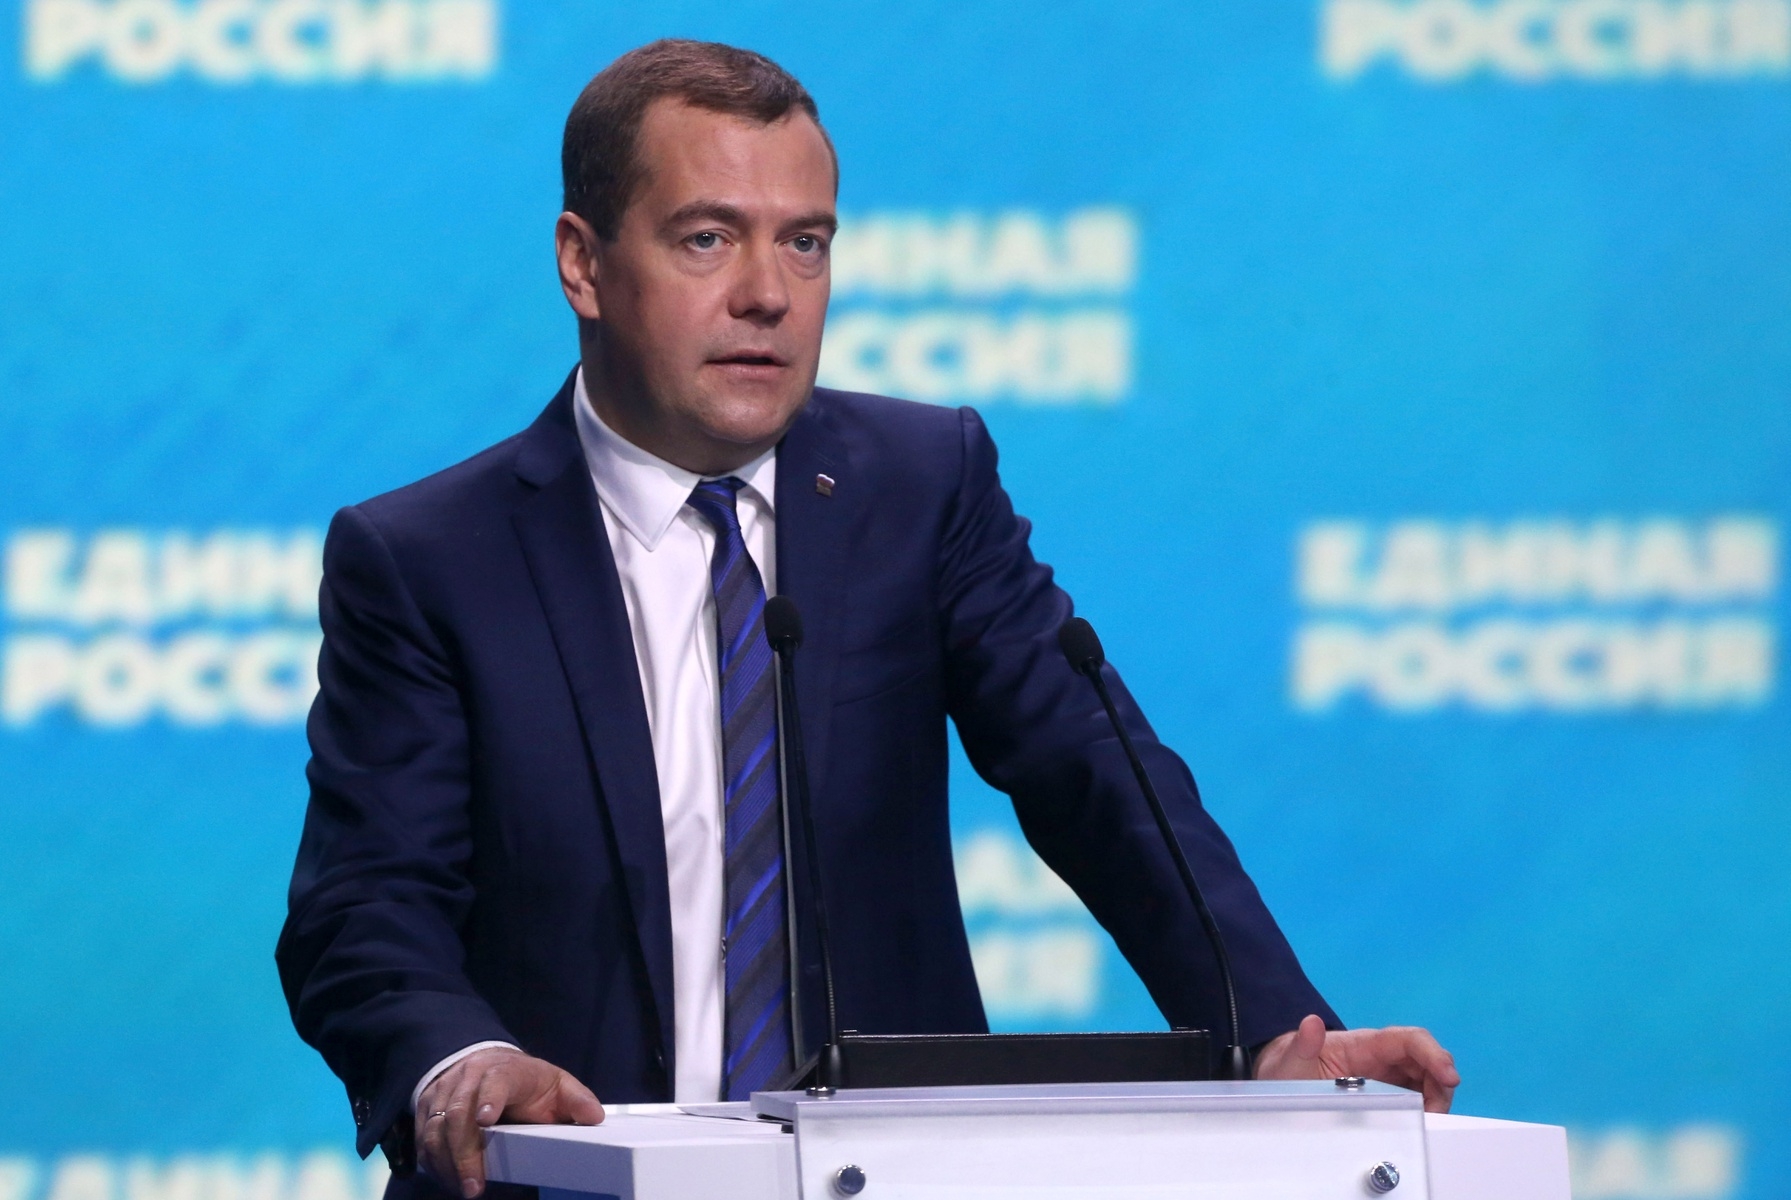 Политический лидер единая. Лидеры партий Медведев.